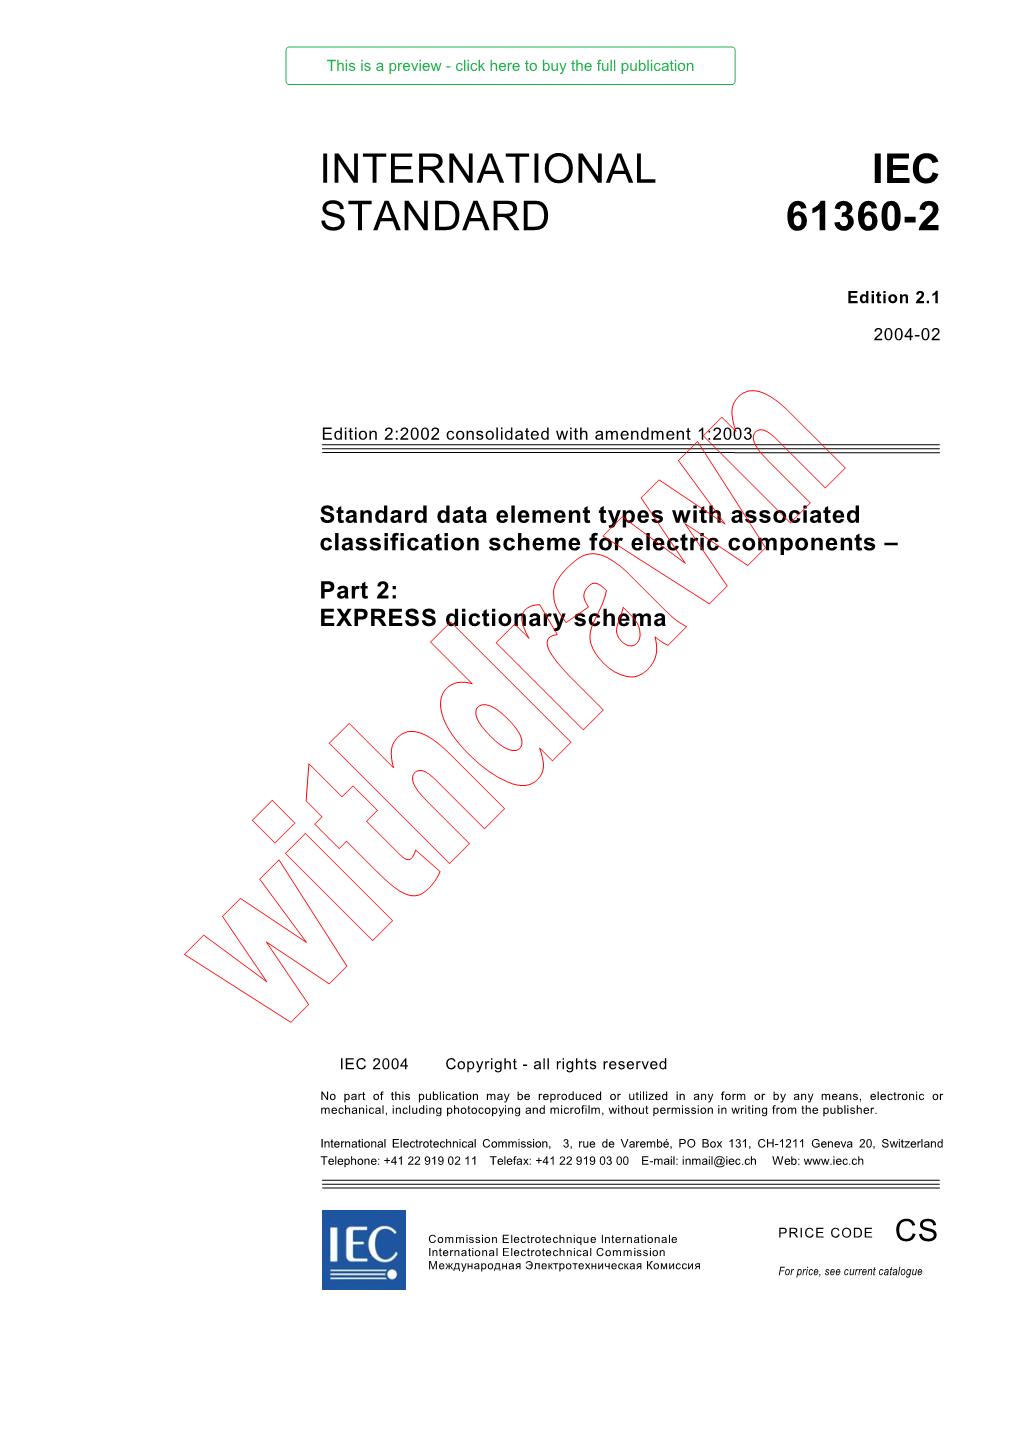 International Standard Iec 61360-2